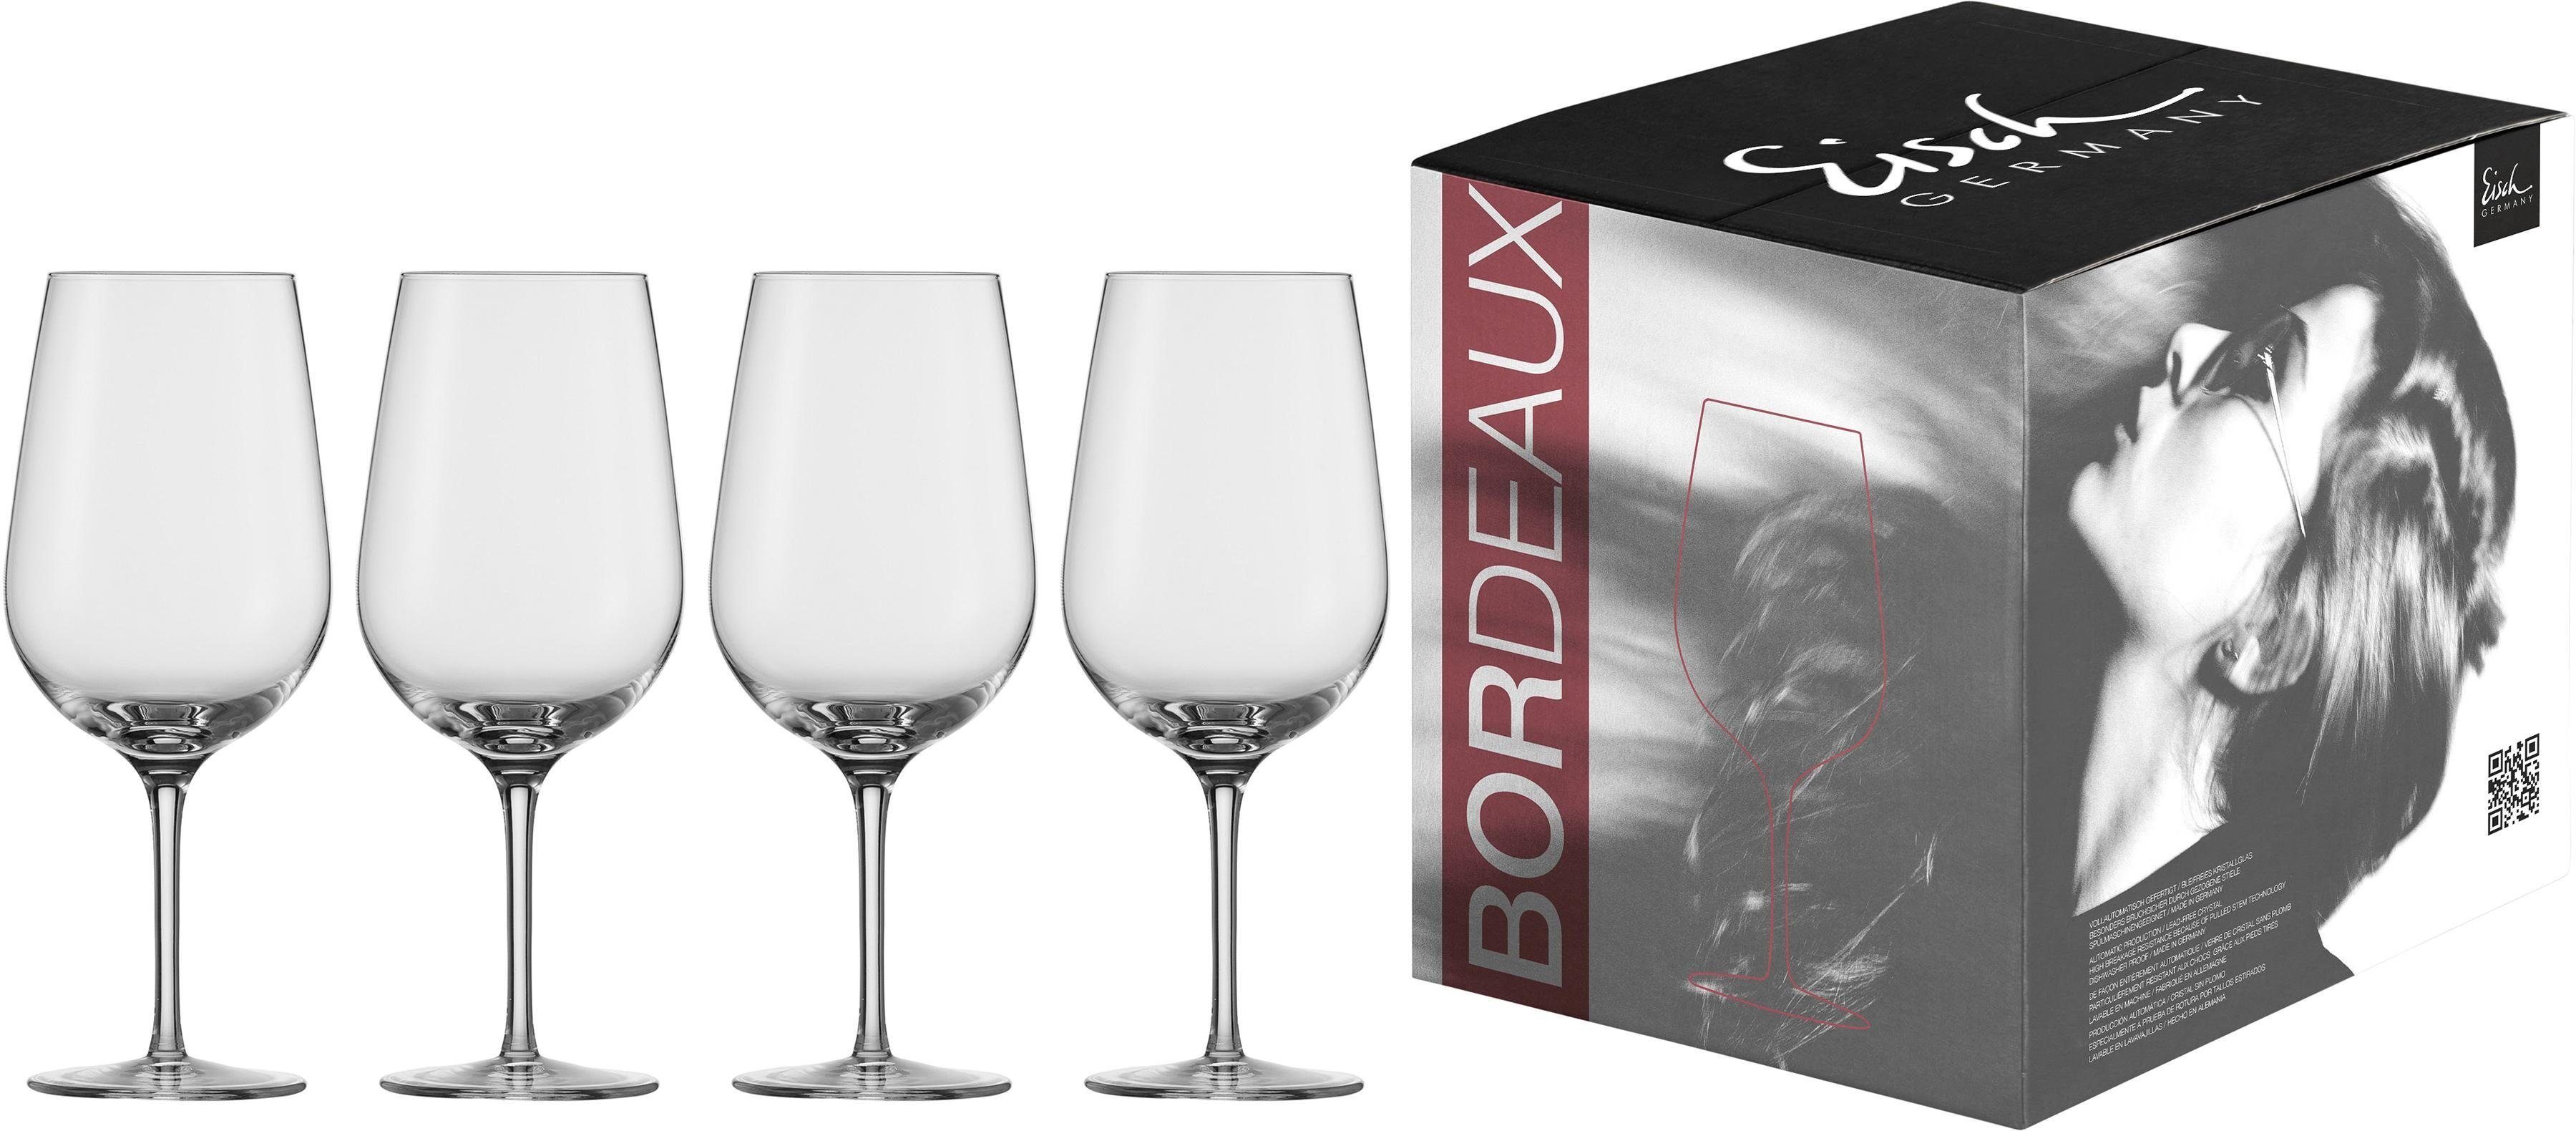 Eisch Rotweinglas Vinezza, Kristallglas, (Bordeauxglas), Bleifrei, 655 ml, 4 -teilig, Aus brillantem Kristallglas gefertigt | Gläser